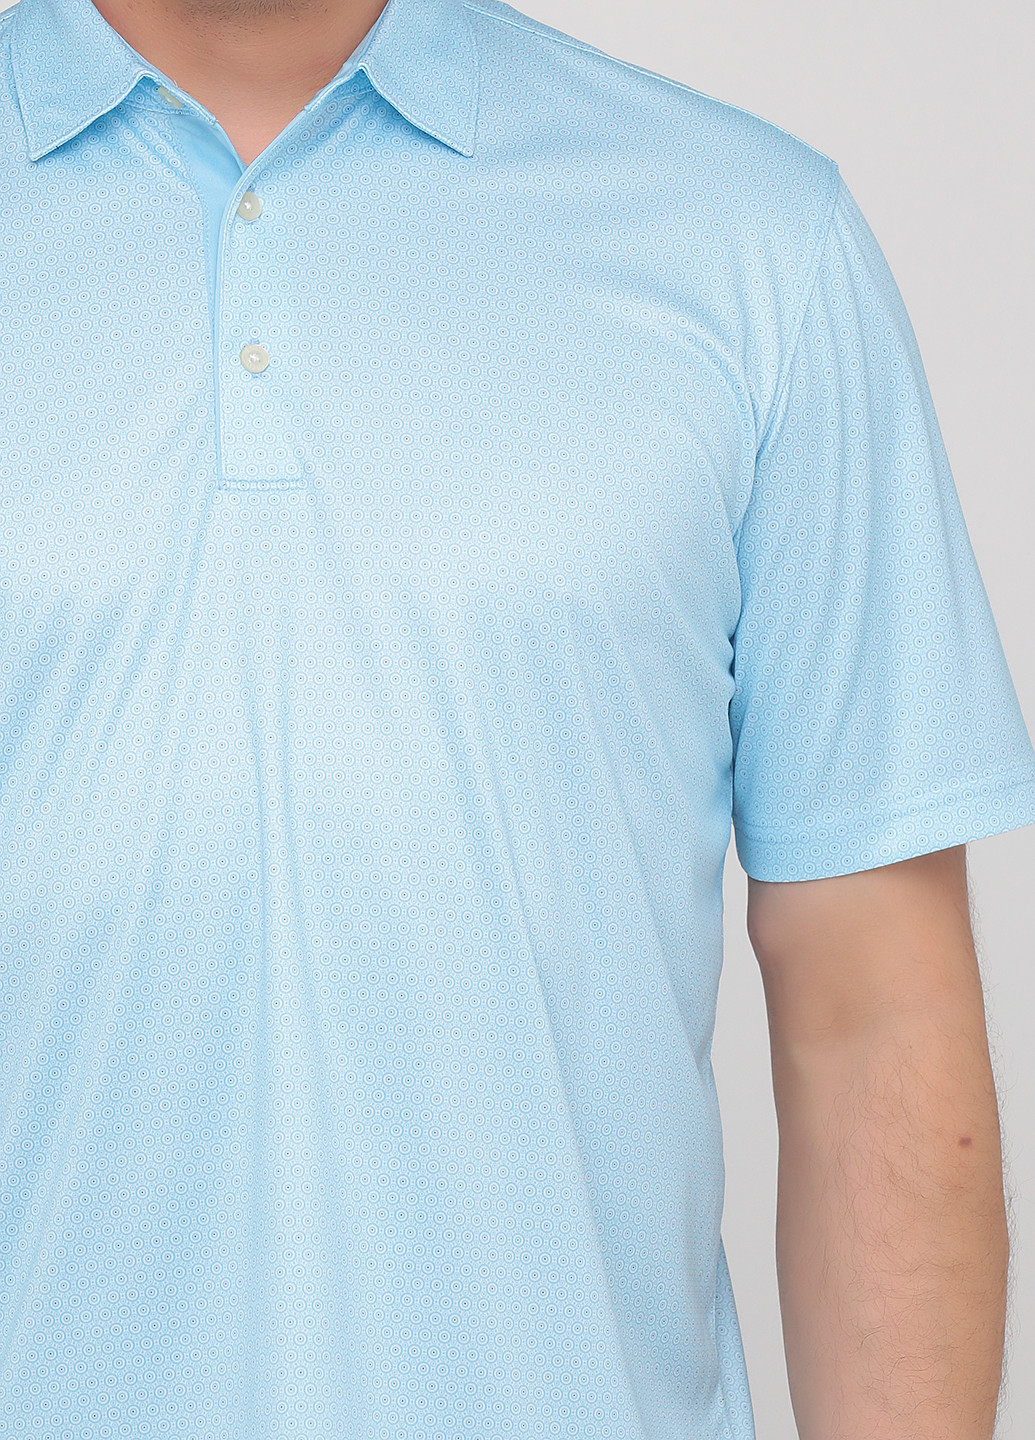 Голубой футболка-поло для мужчин Greg Norman с орнаментом